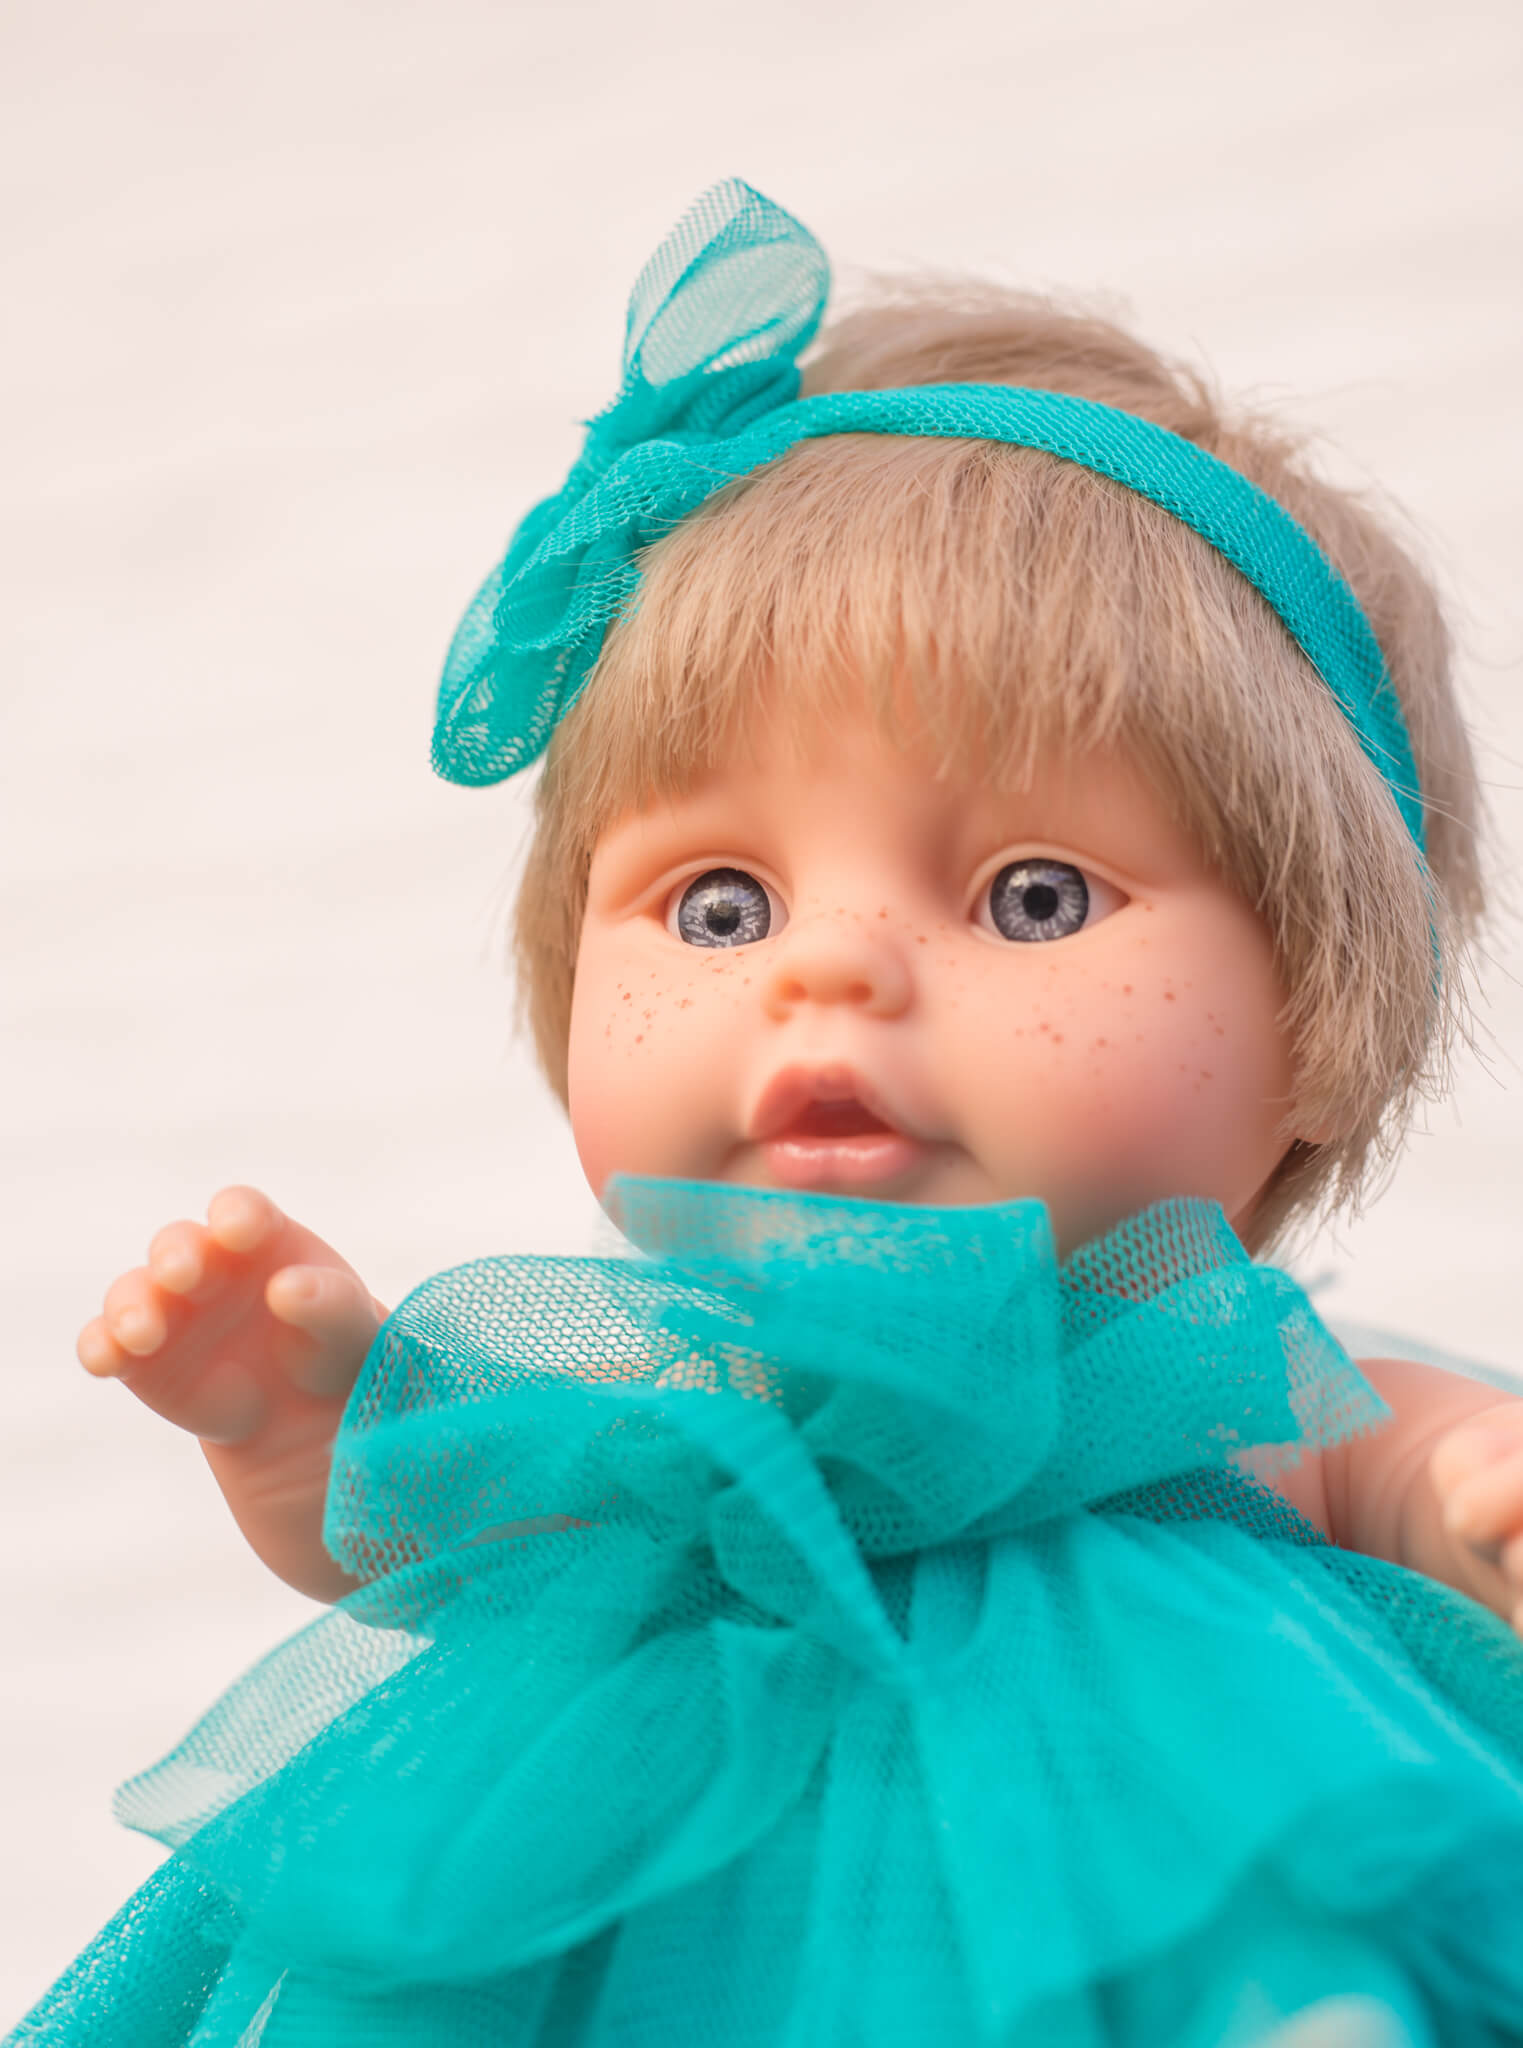 Popje klein met Feestjurk Turquoise - Berjuan - detail gezicht en jurkje pop